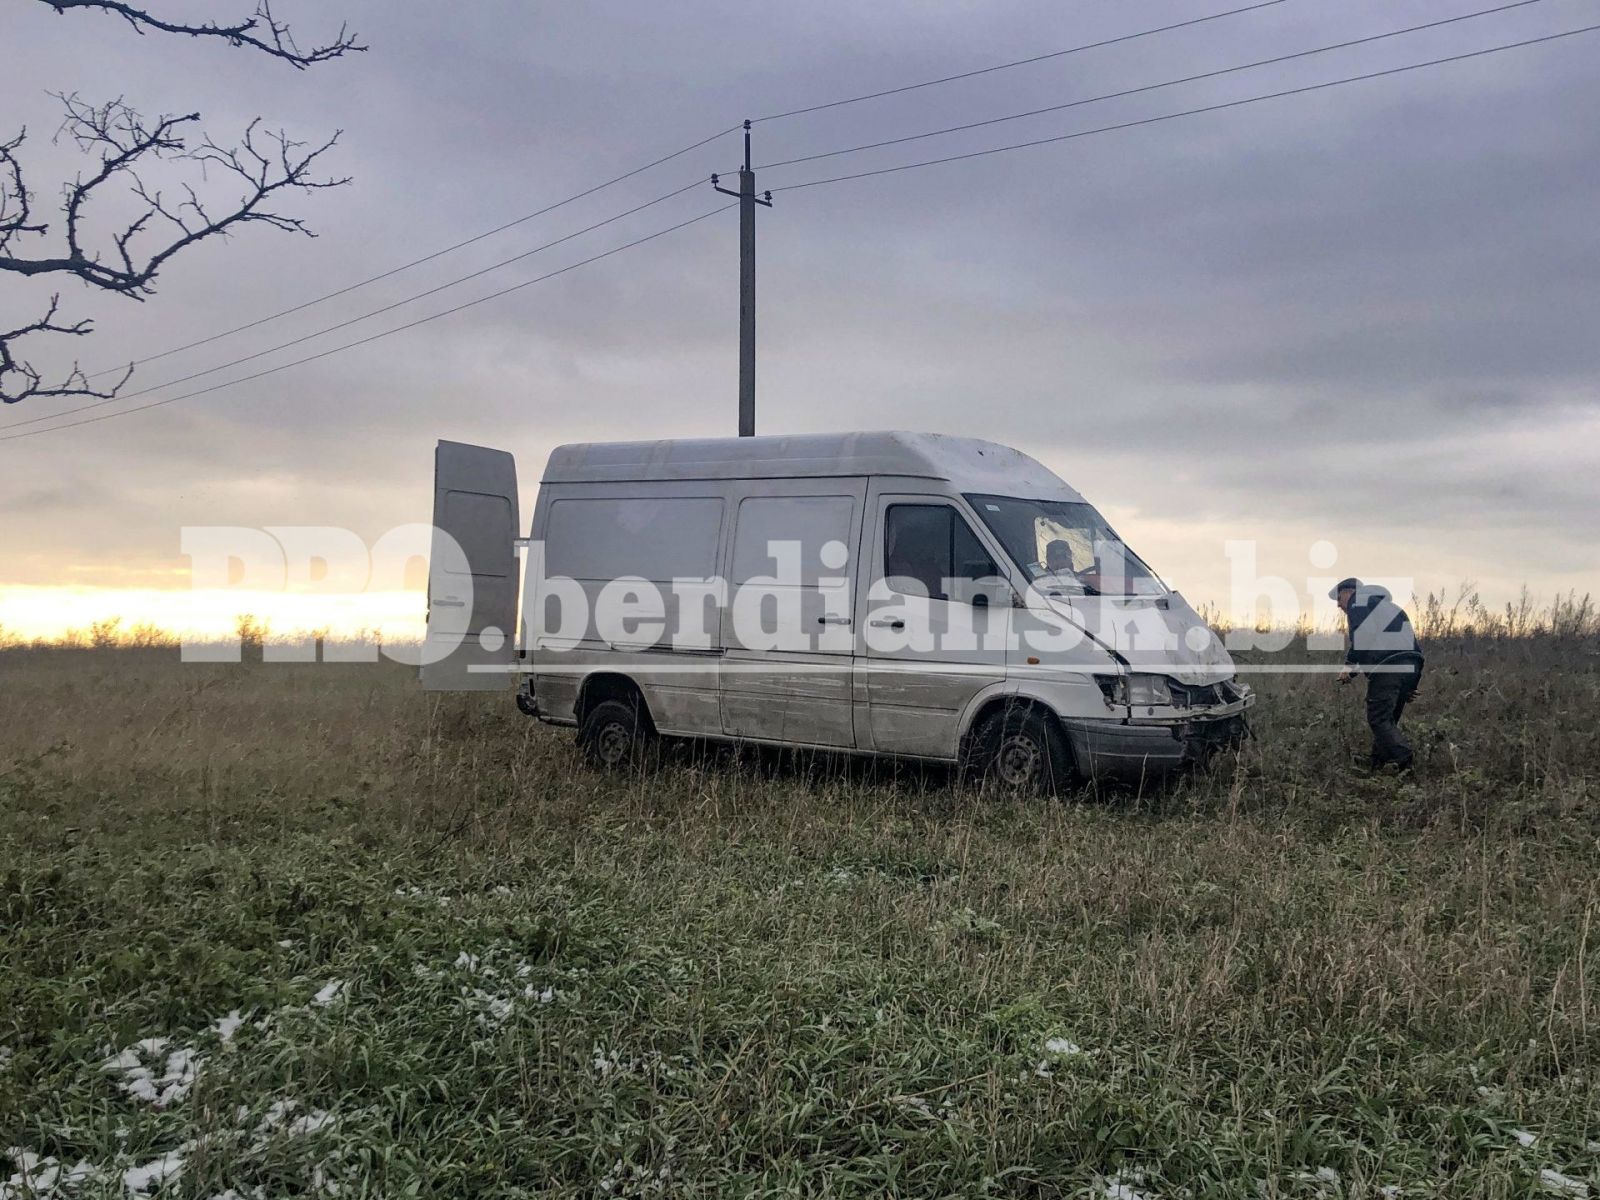 В Бердянске похитили автомобиль «Новой почты» вместе с посылками на 100 тысяч гривен